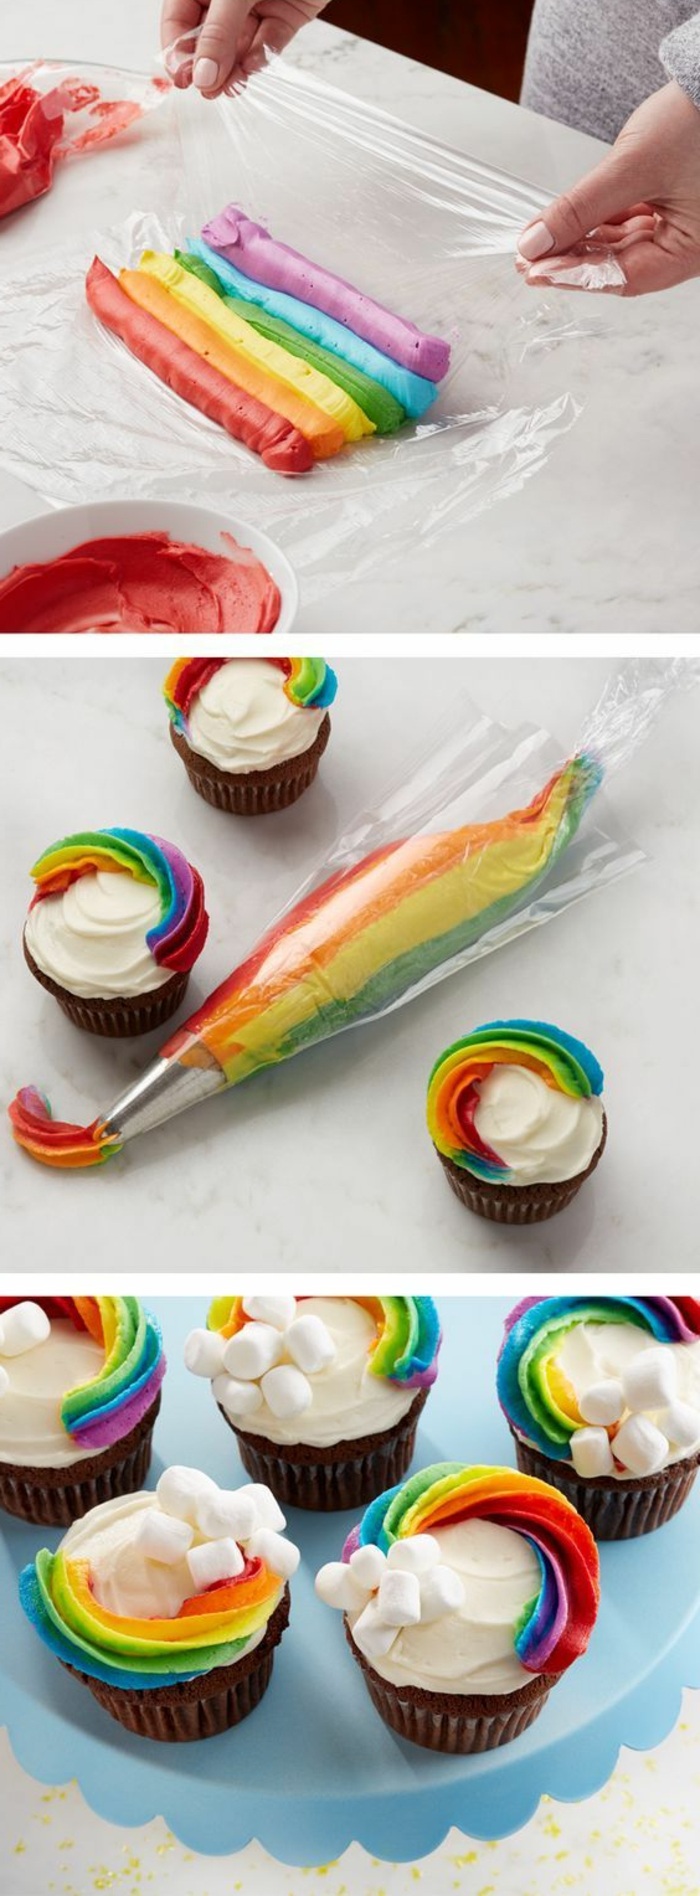 cupcakes decorar con crema en los colores del arco iris